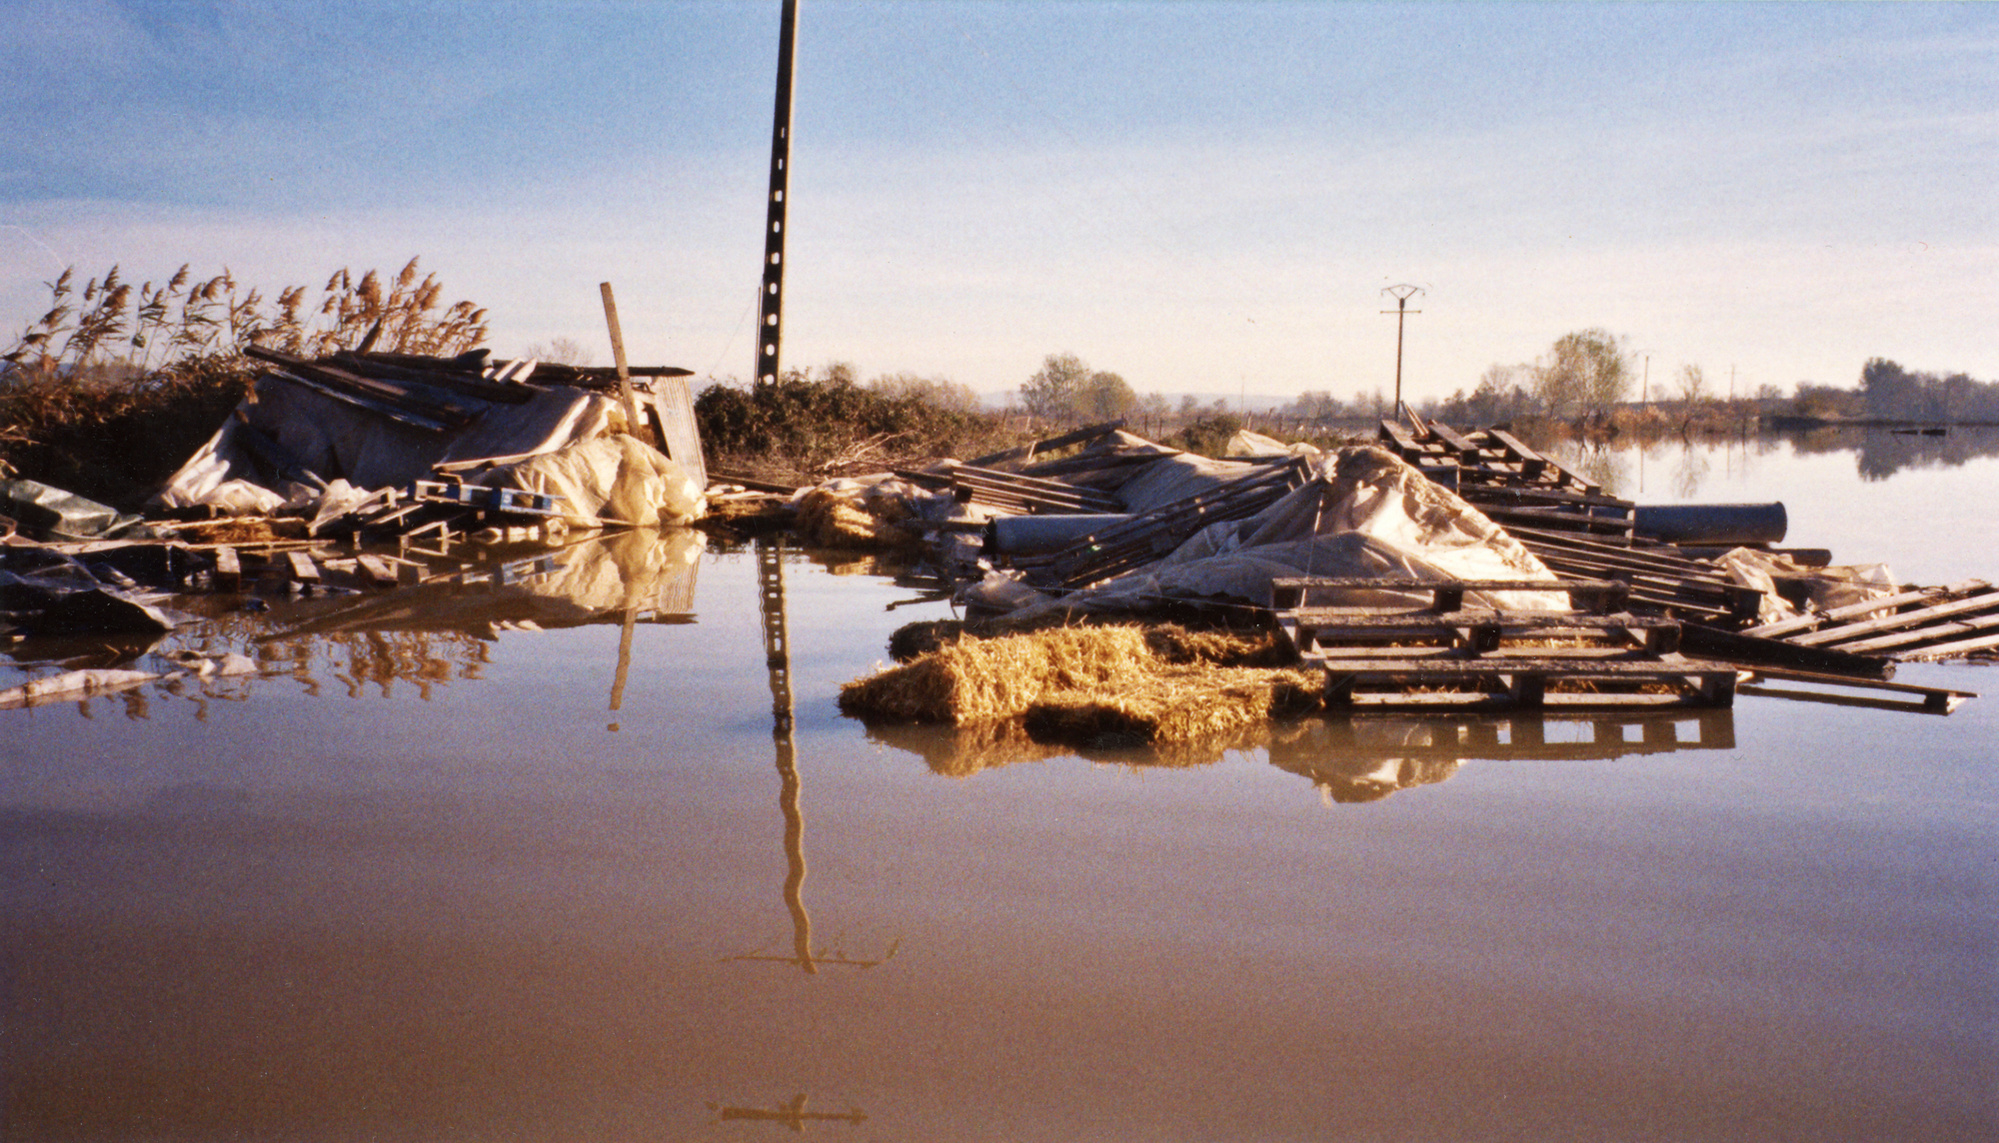 Inondation 2003 Arles, Photographie d’archive de Mme Pilia